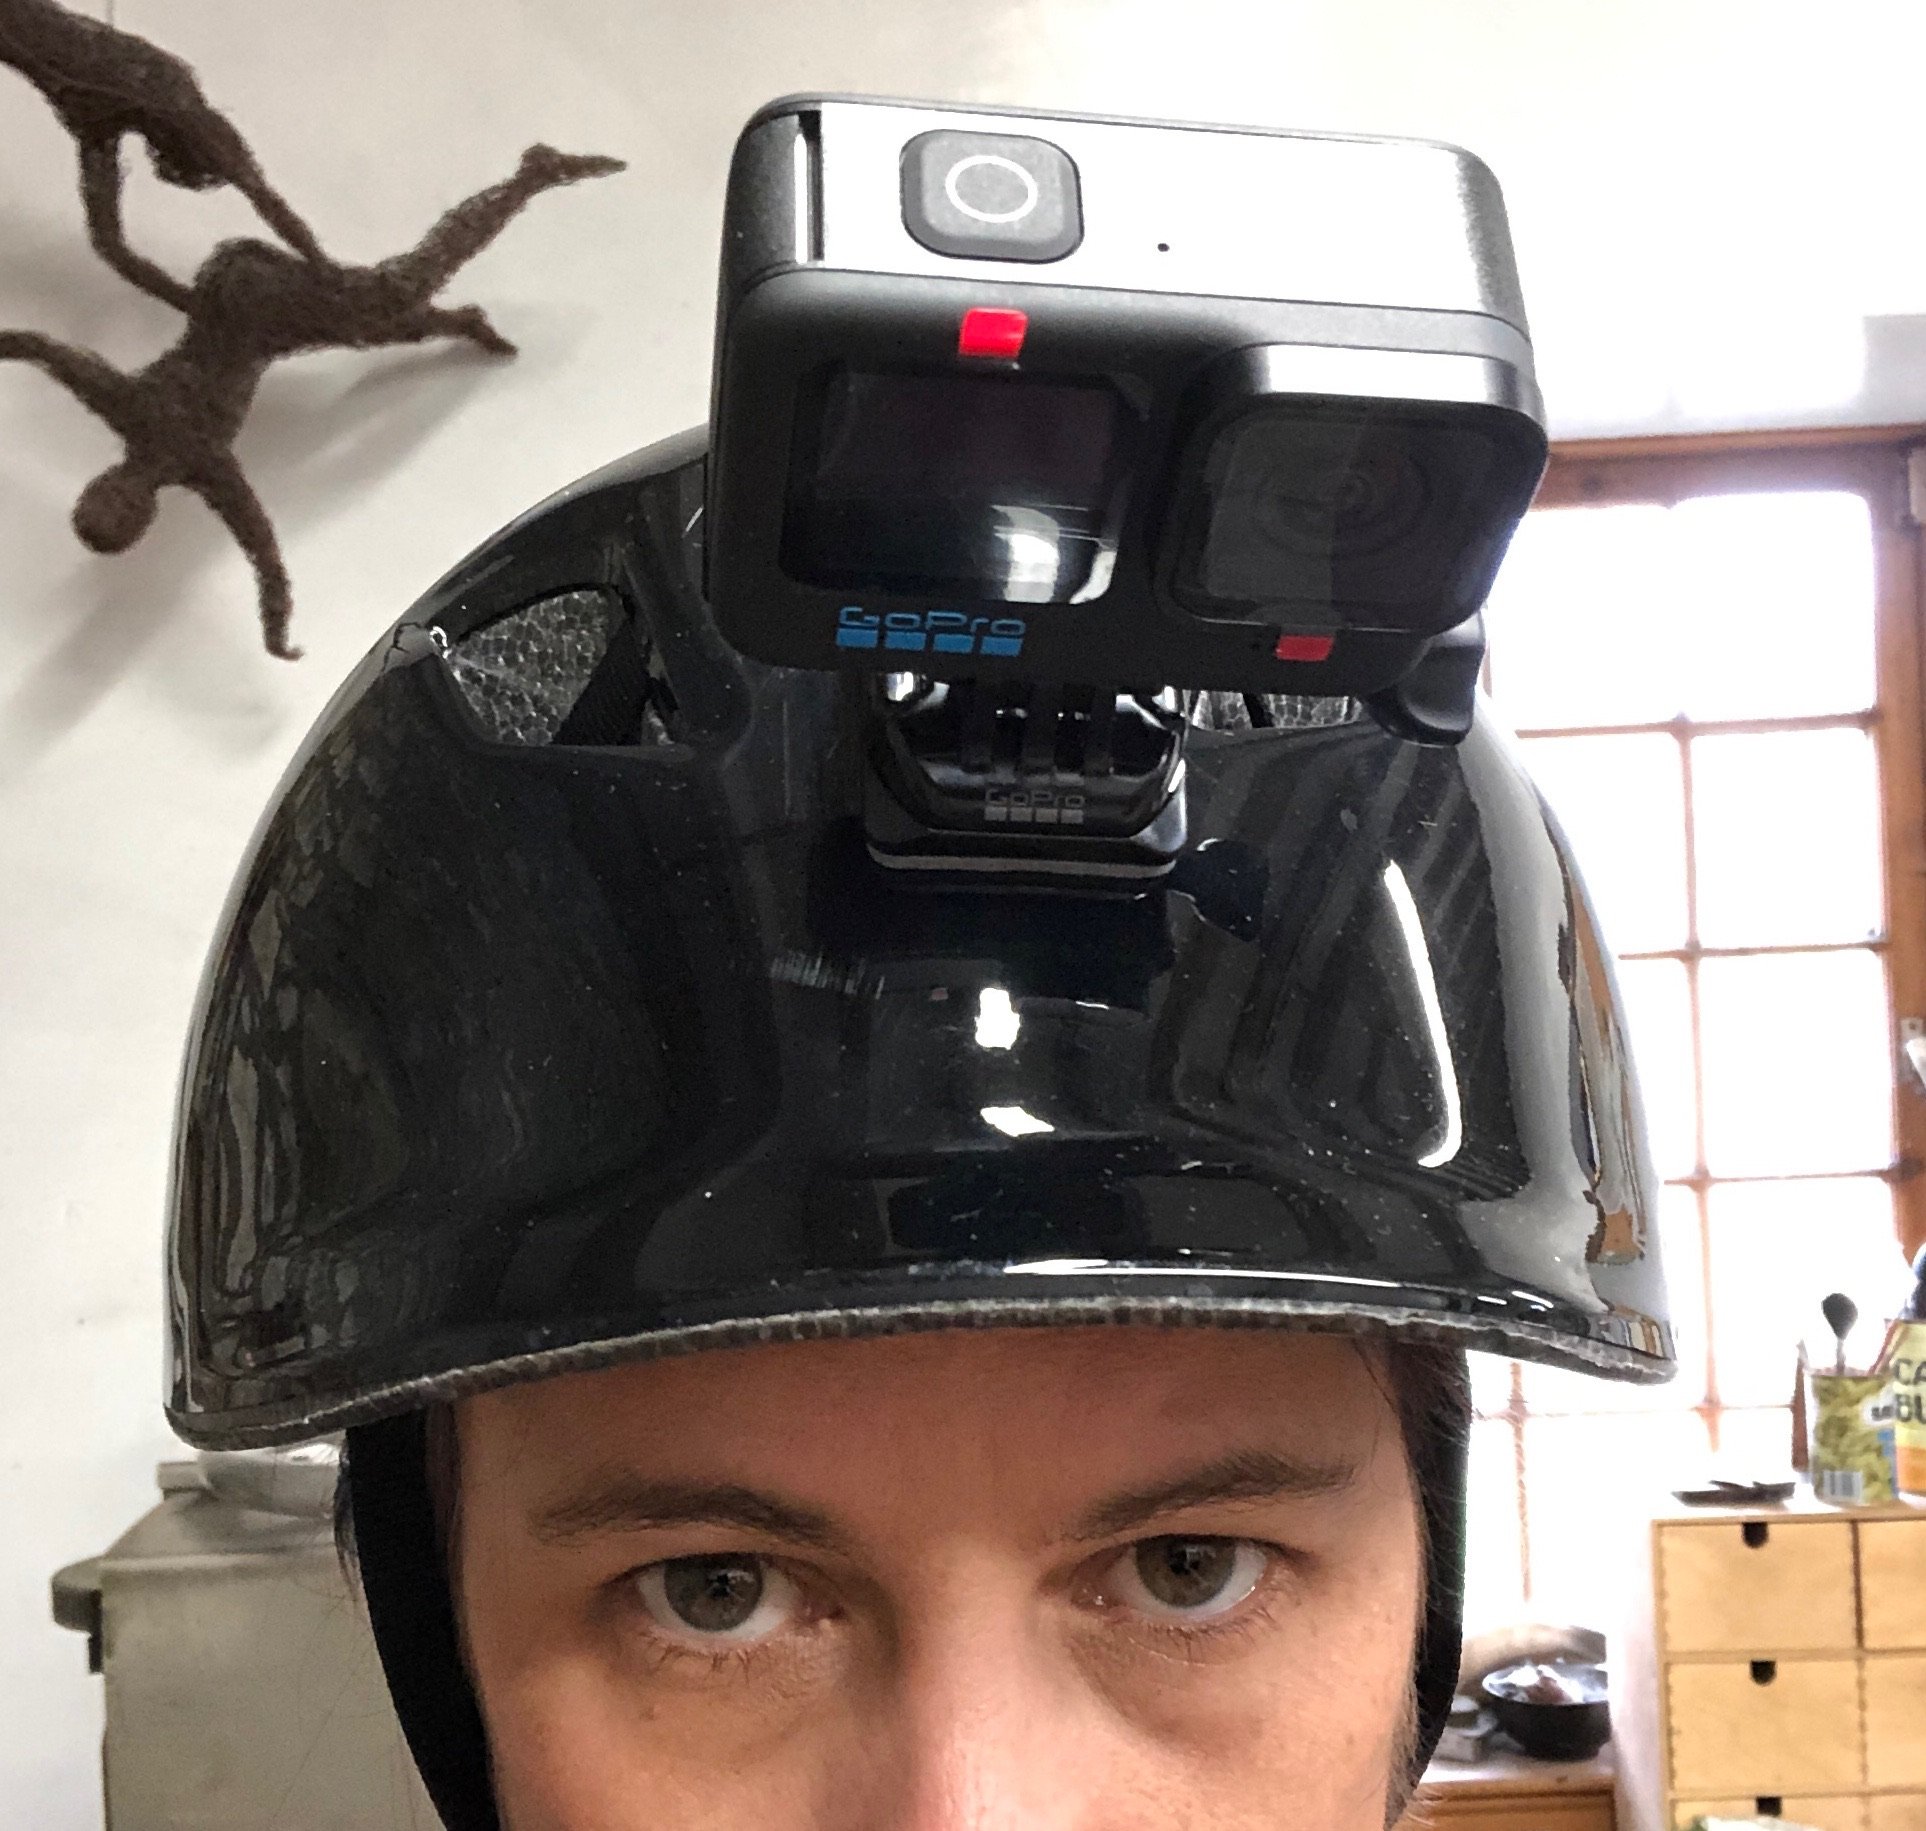 Helmet camera